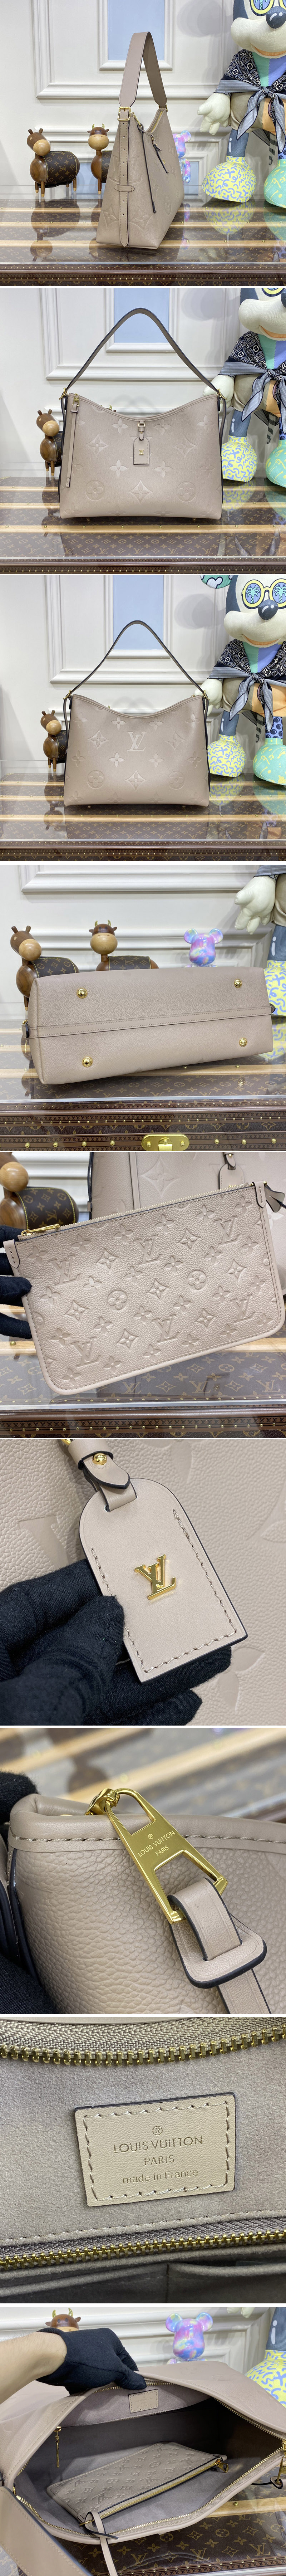 Replica Louis Vuitton Bags